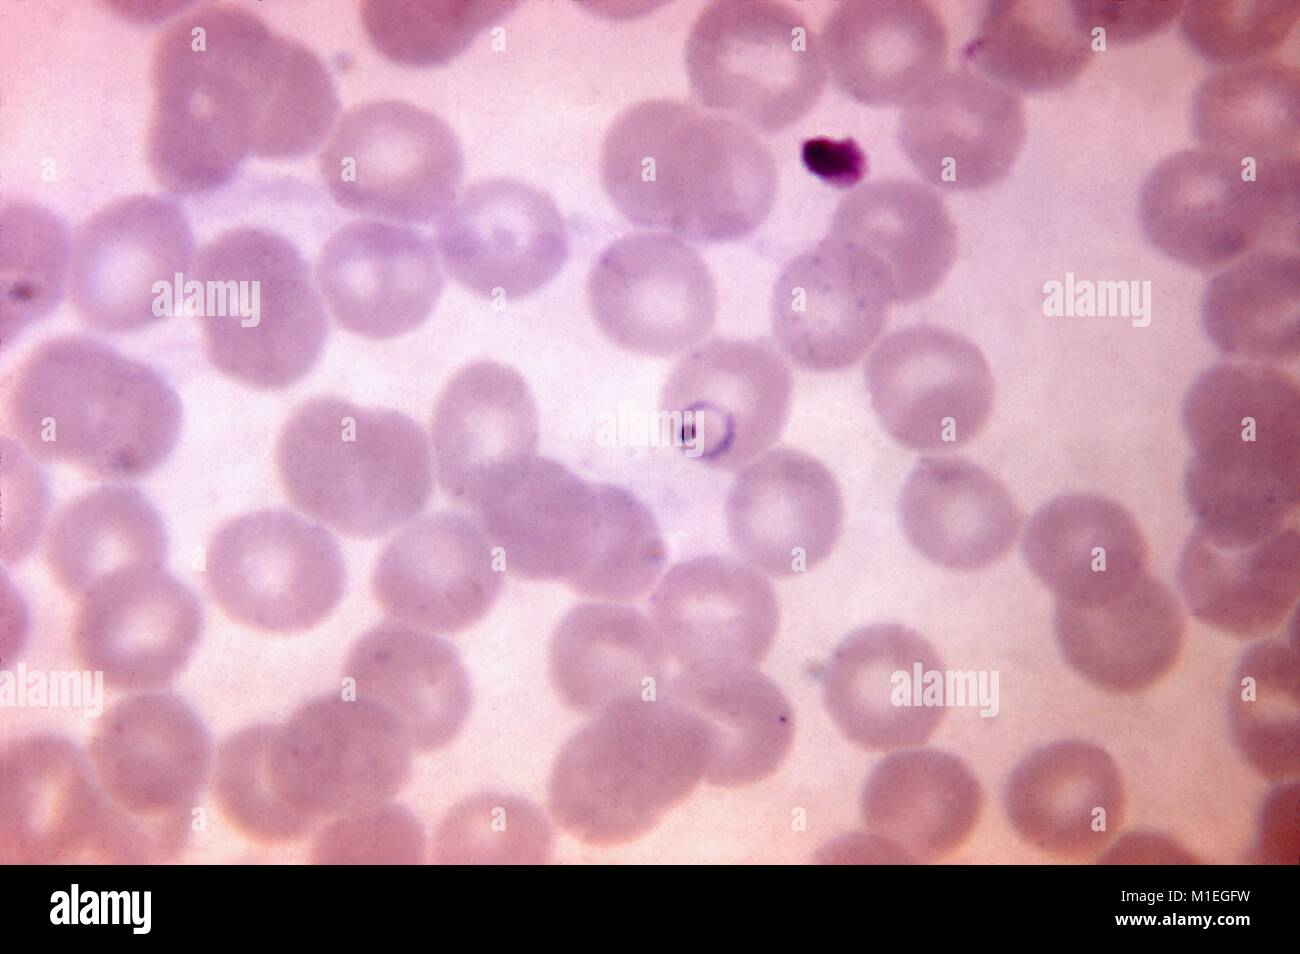 Plasmodium vivax revela en forma de anillo un frotis de sangre micrografía film, 1970. Imagen cortesía de los Centros para el Control de Enfermedades (CDC). () Foto de stock